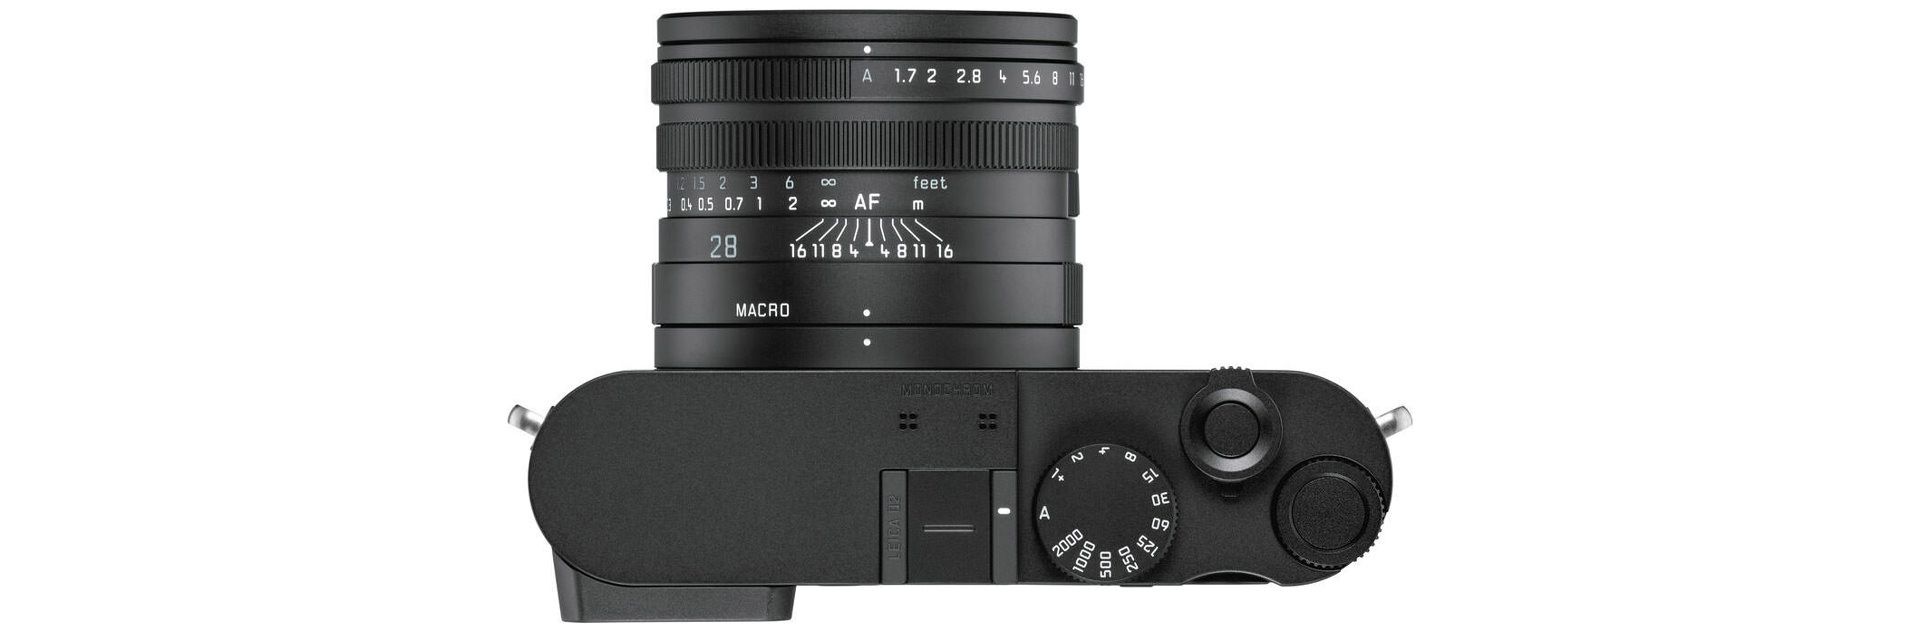 بخش بالایی لایکا کیو 2 مونوکروم / Leica Q2 Monochrom